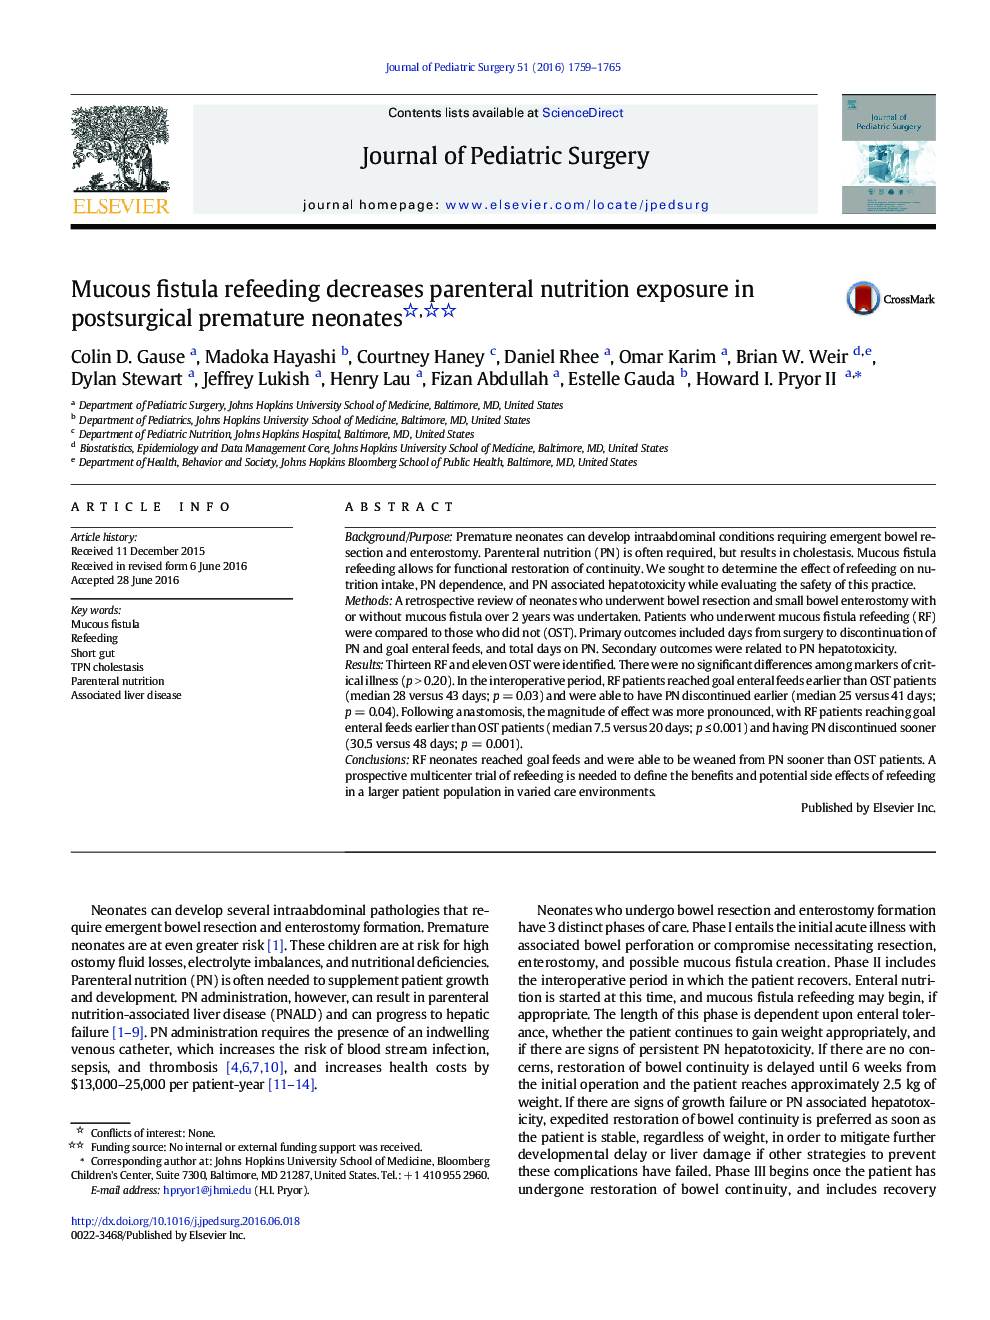 Original ArticleMucous fistula refeeding decreases parenteral nutrition exposure in postsurgical premature neonates